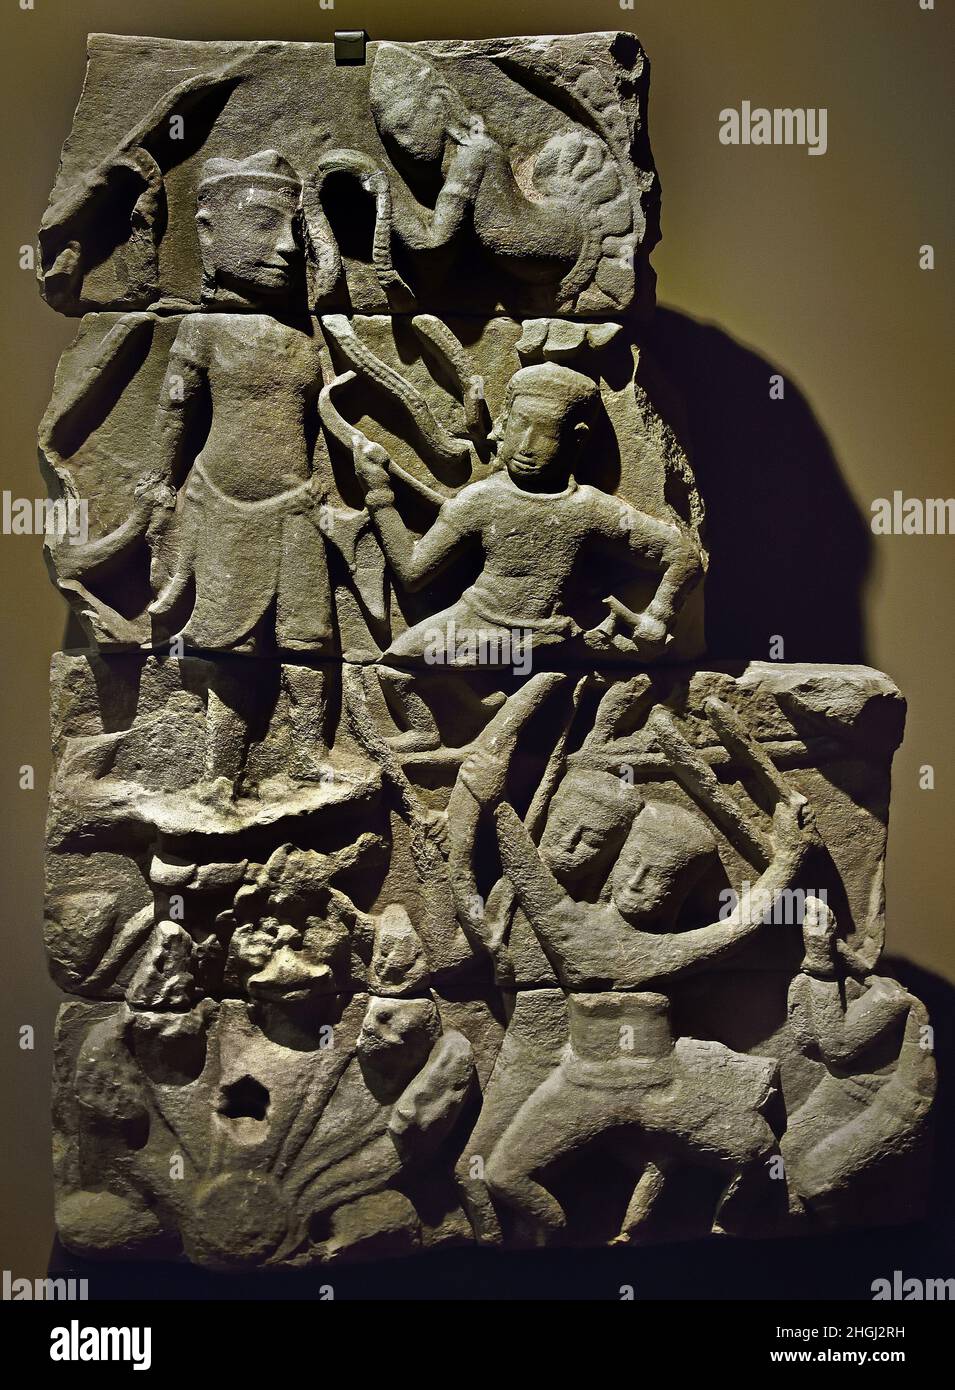 Triumph scene during a battle - Cambodia 12th - 13th century A.D Cambodian Sandstone. Stock Photo